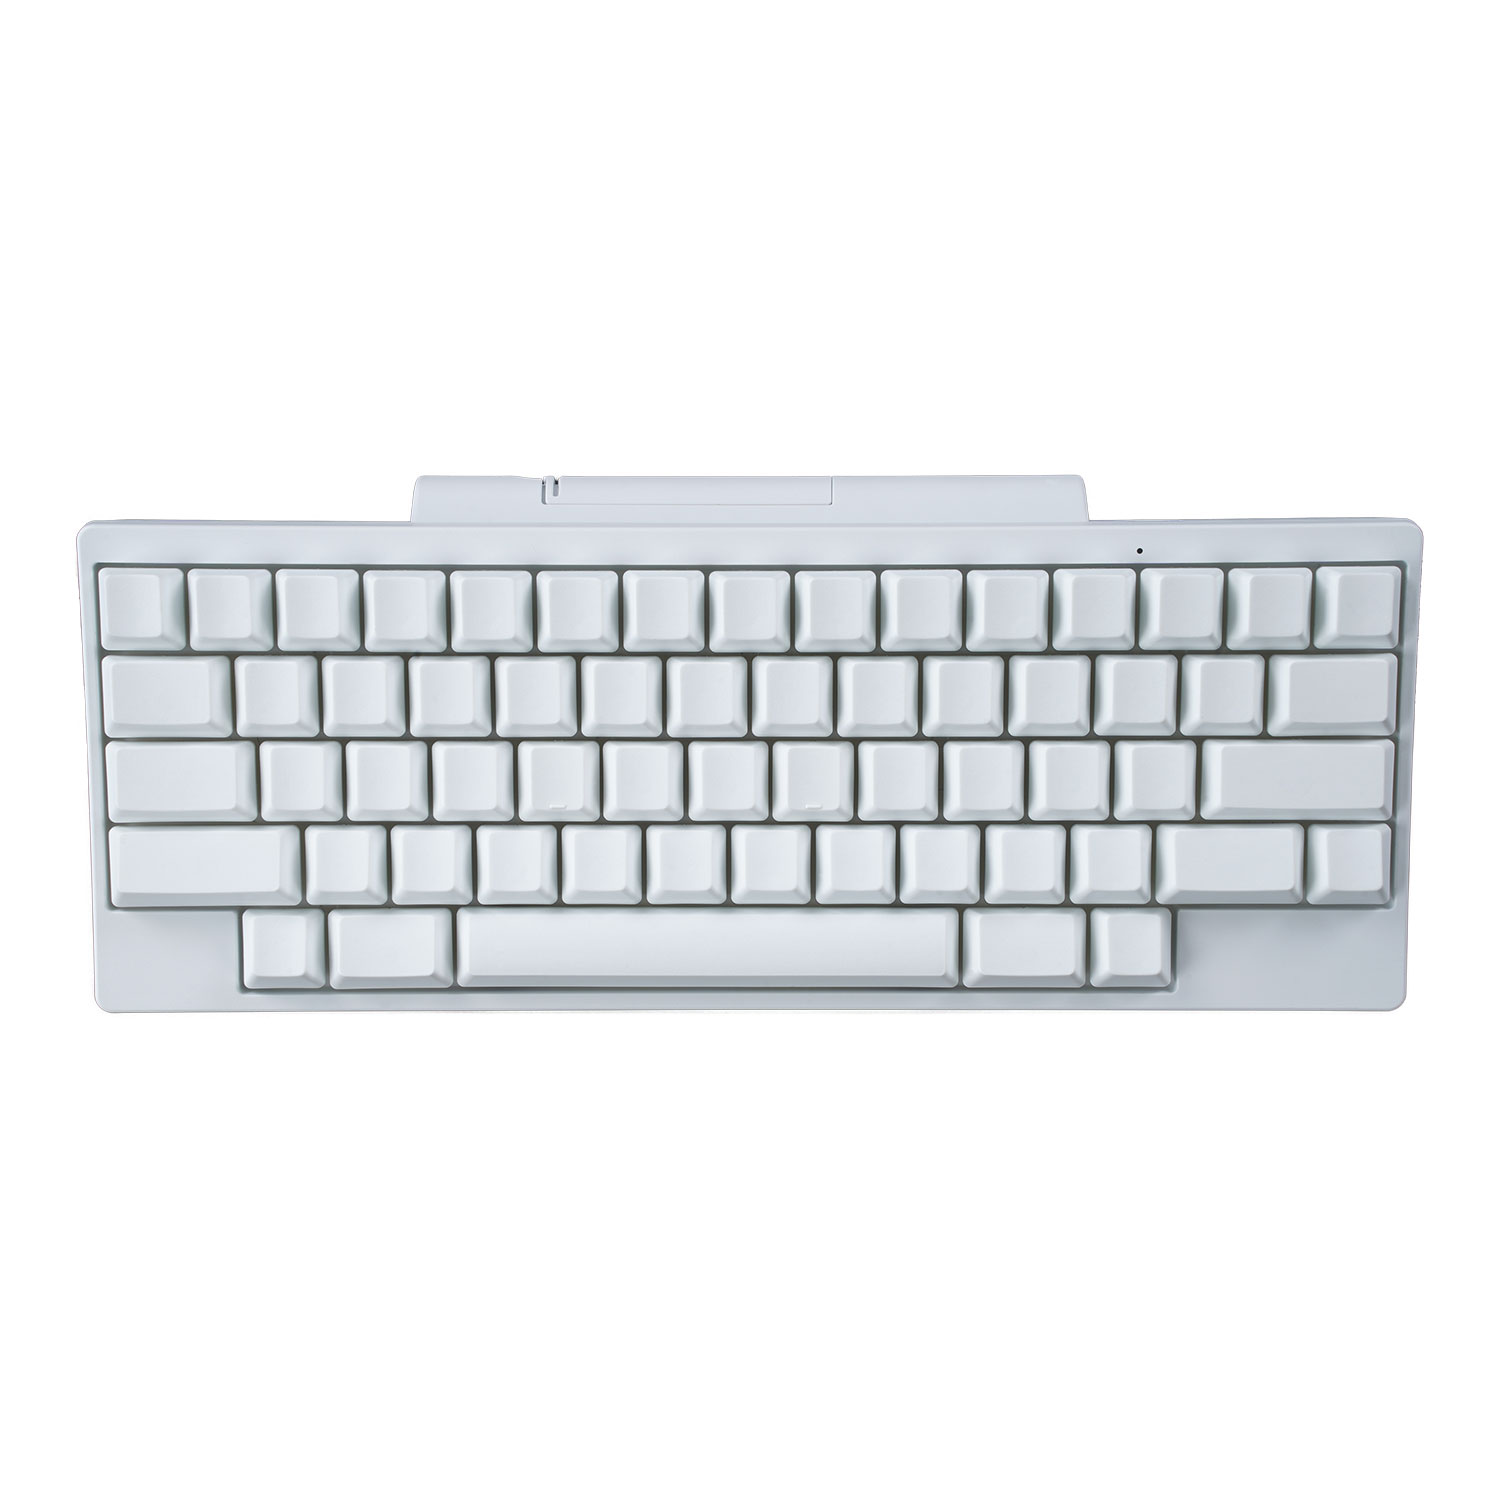 Hybrid Type-S Snow Tastatur (Tastenkappen ohne Beschriftung)